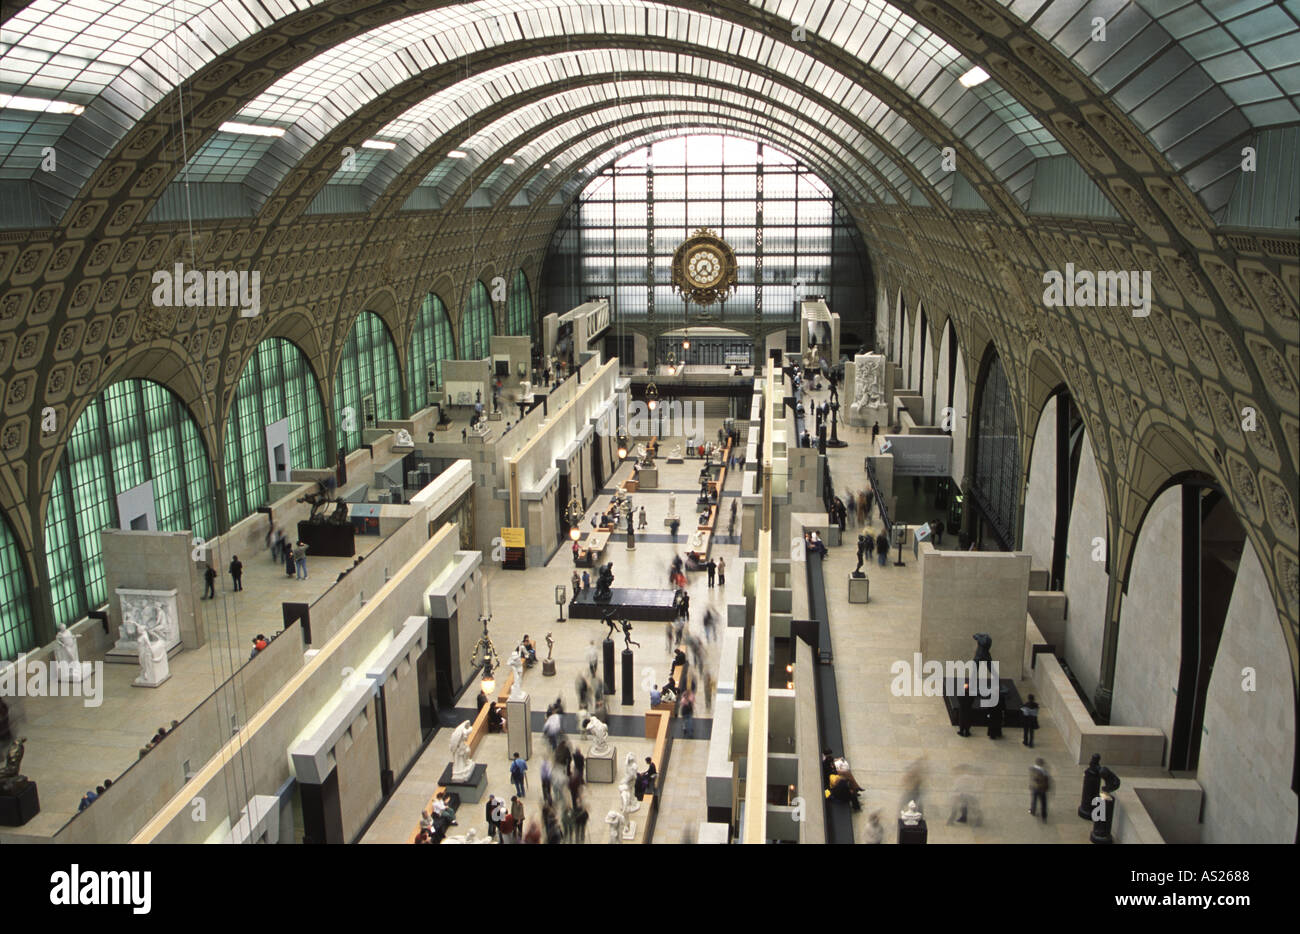 La grande galerie du Musée Dorsay s Paris célèbre pour s collection de Belle rusty nail art le bâtiment était autrefois un train statio Banque D'Images